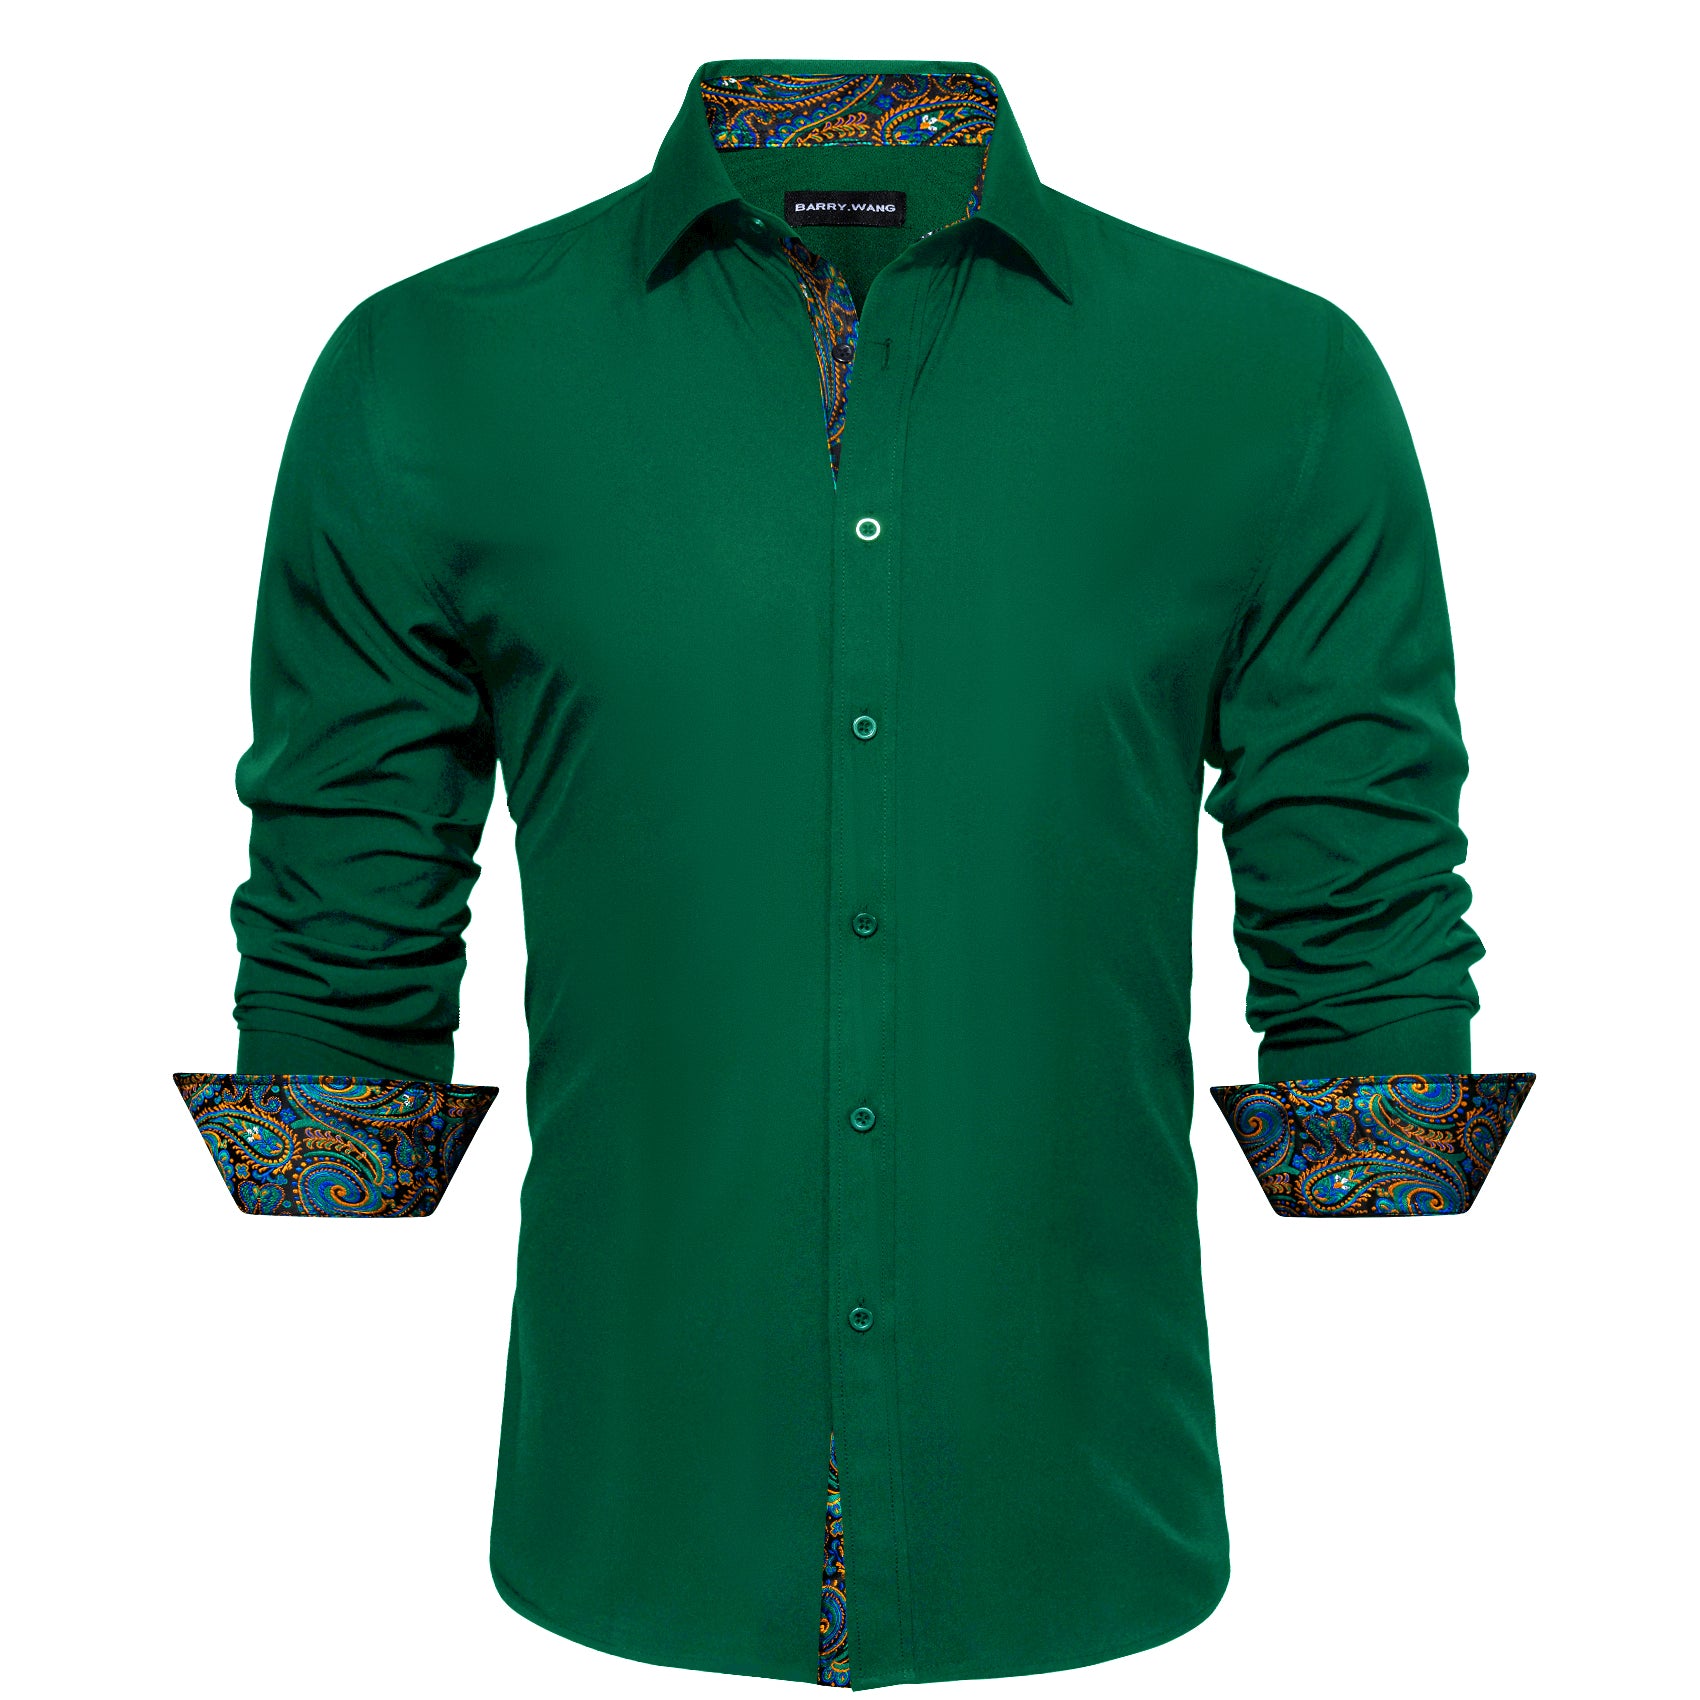 Barry.wang Formal Green Blue Splicing Men's Business Shirt